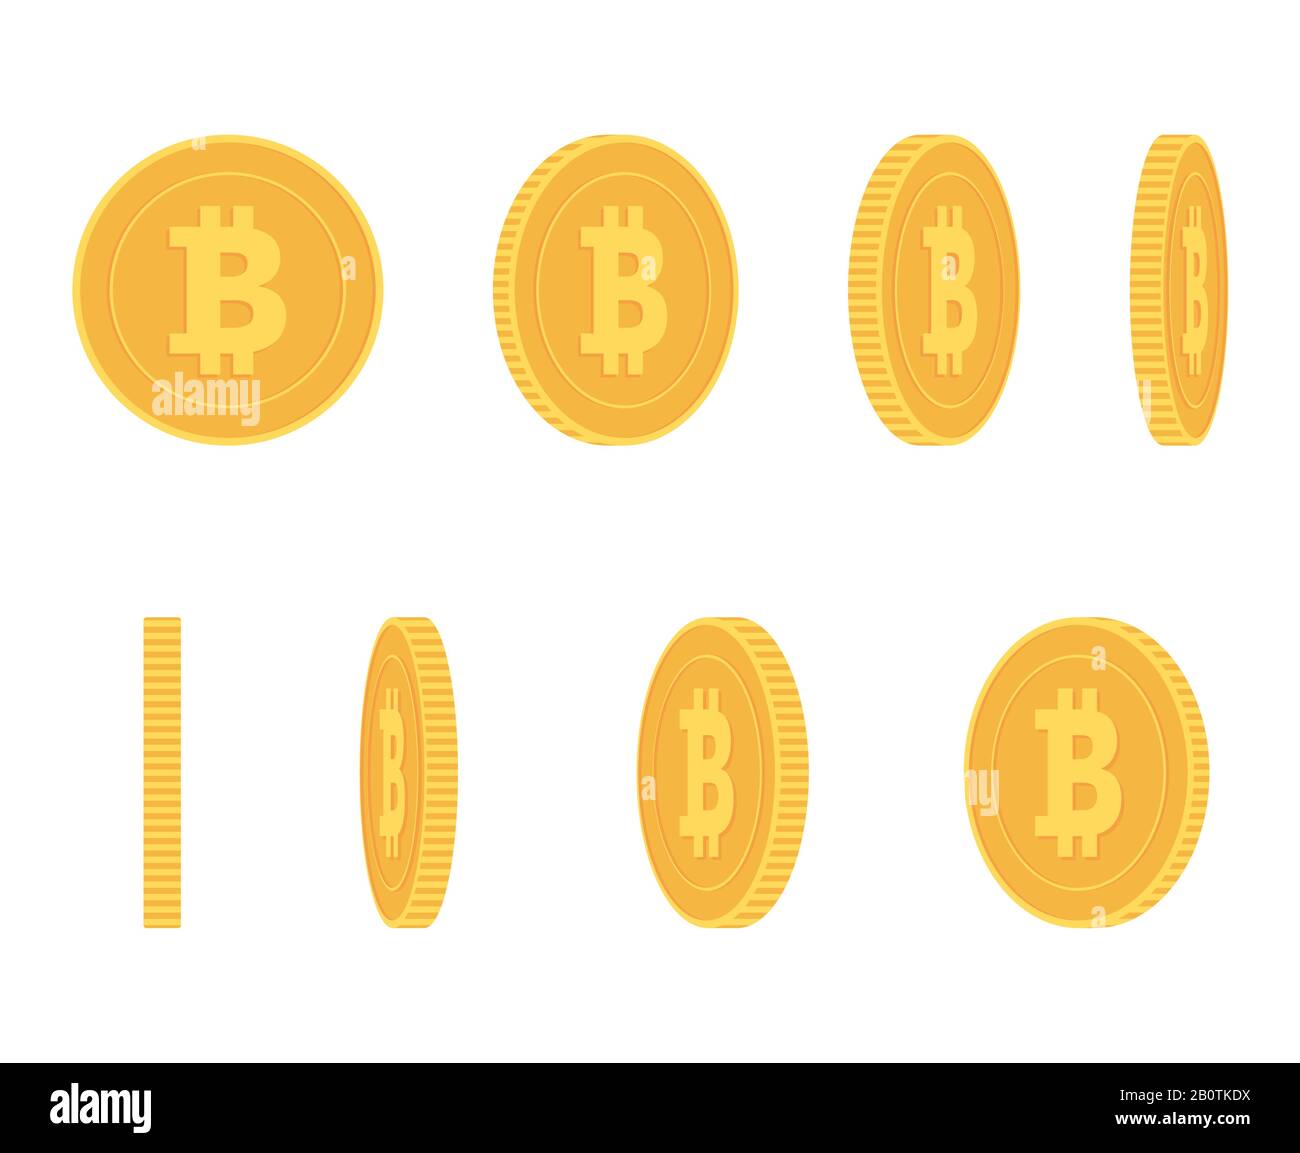 Bitcoin Goldmünze in verschiedenen Winkeln für den Animationsvektor Set Finance Money Currency Bitcoin Illustration Stock Vektor